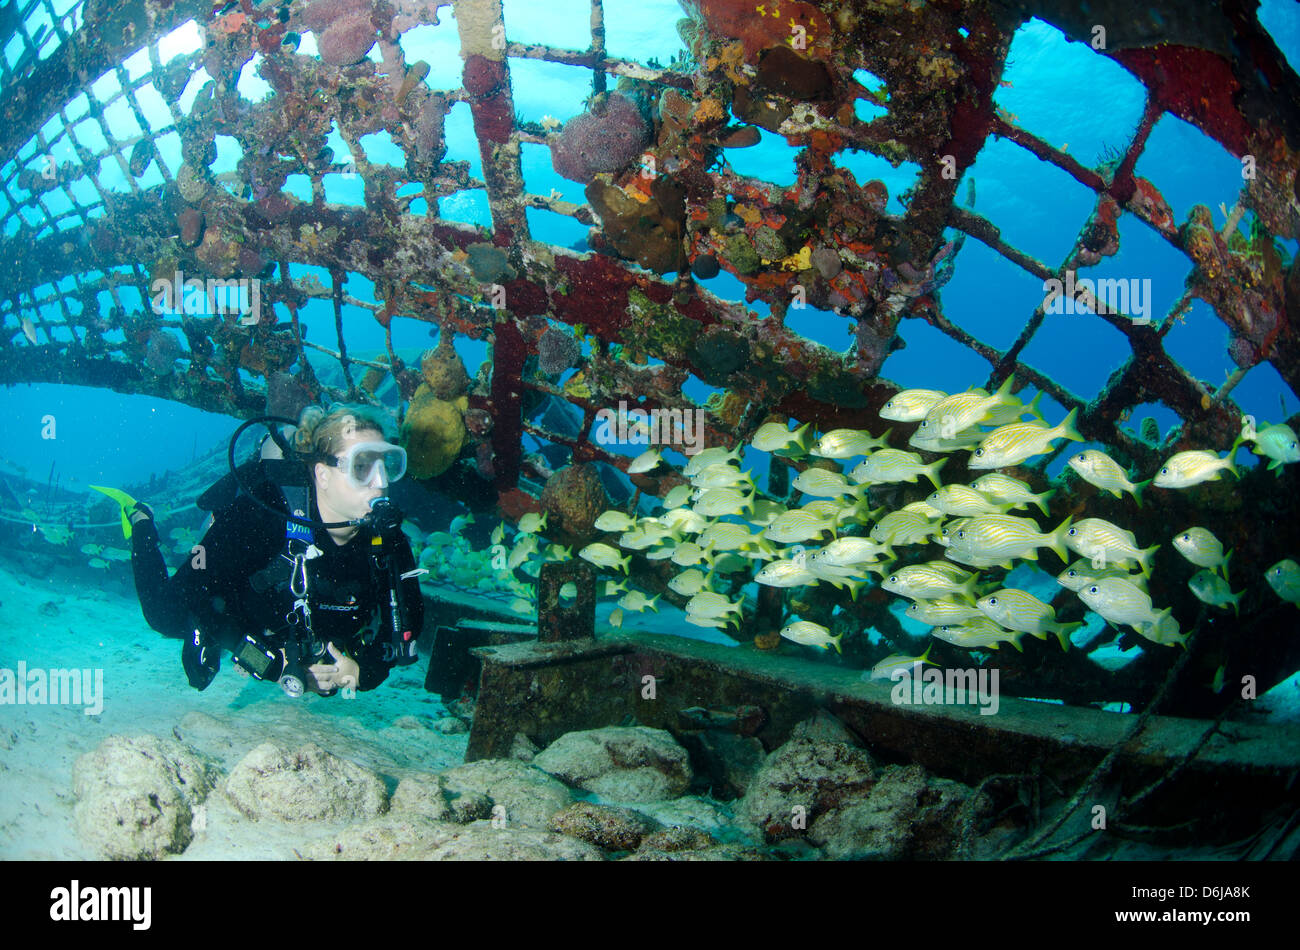 L'intérieur du plongeur de Thunderdome Turks et Caicos, Antilles, Caraïbes, Amérique Centrale Banque D'Images